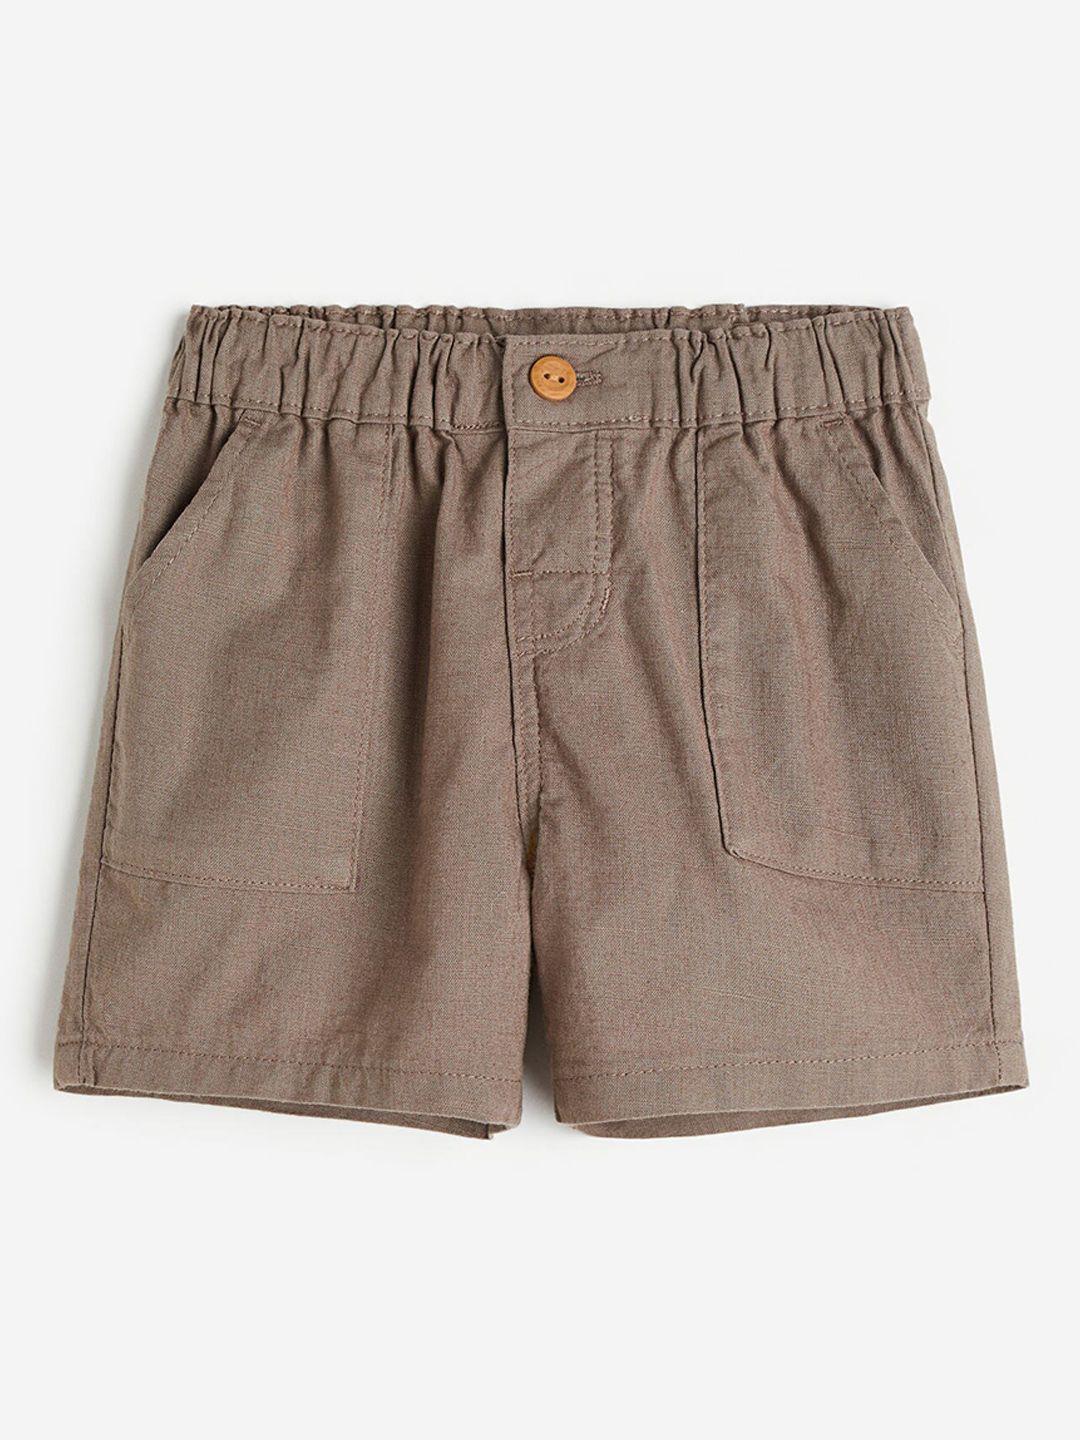 h&m boys pure cotton shorts